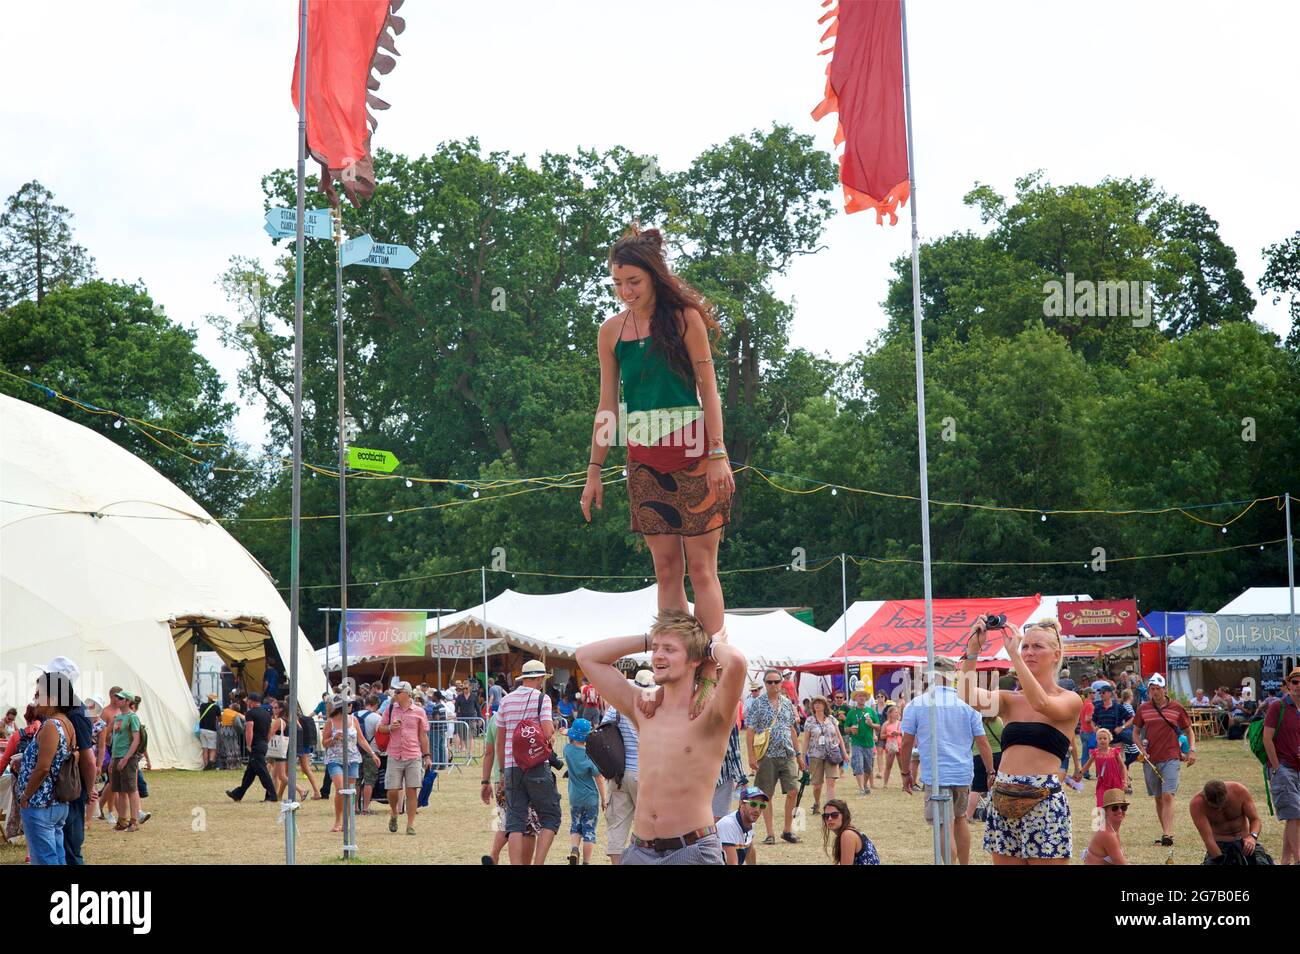 Couple réalisant des acrobaties au festival Womad, en Angleterre. Été Banque D'Images